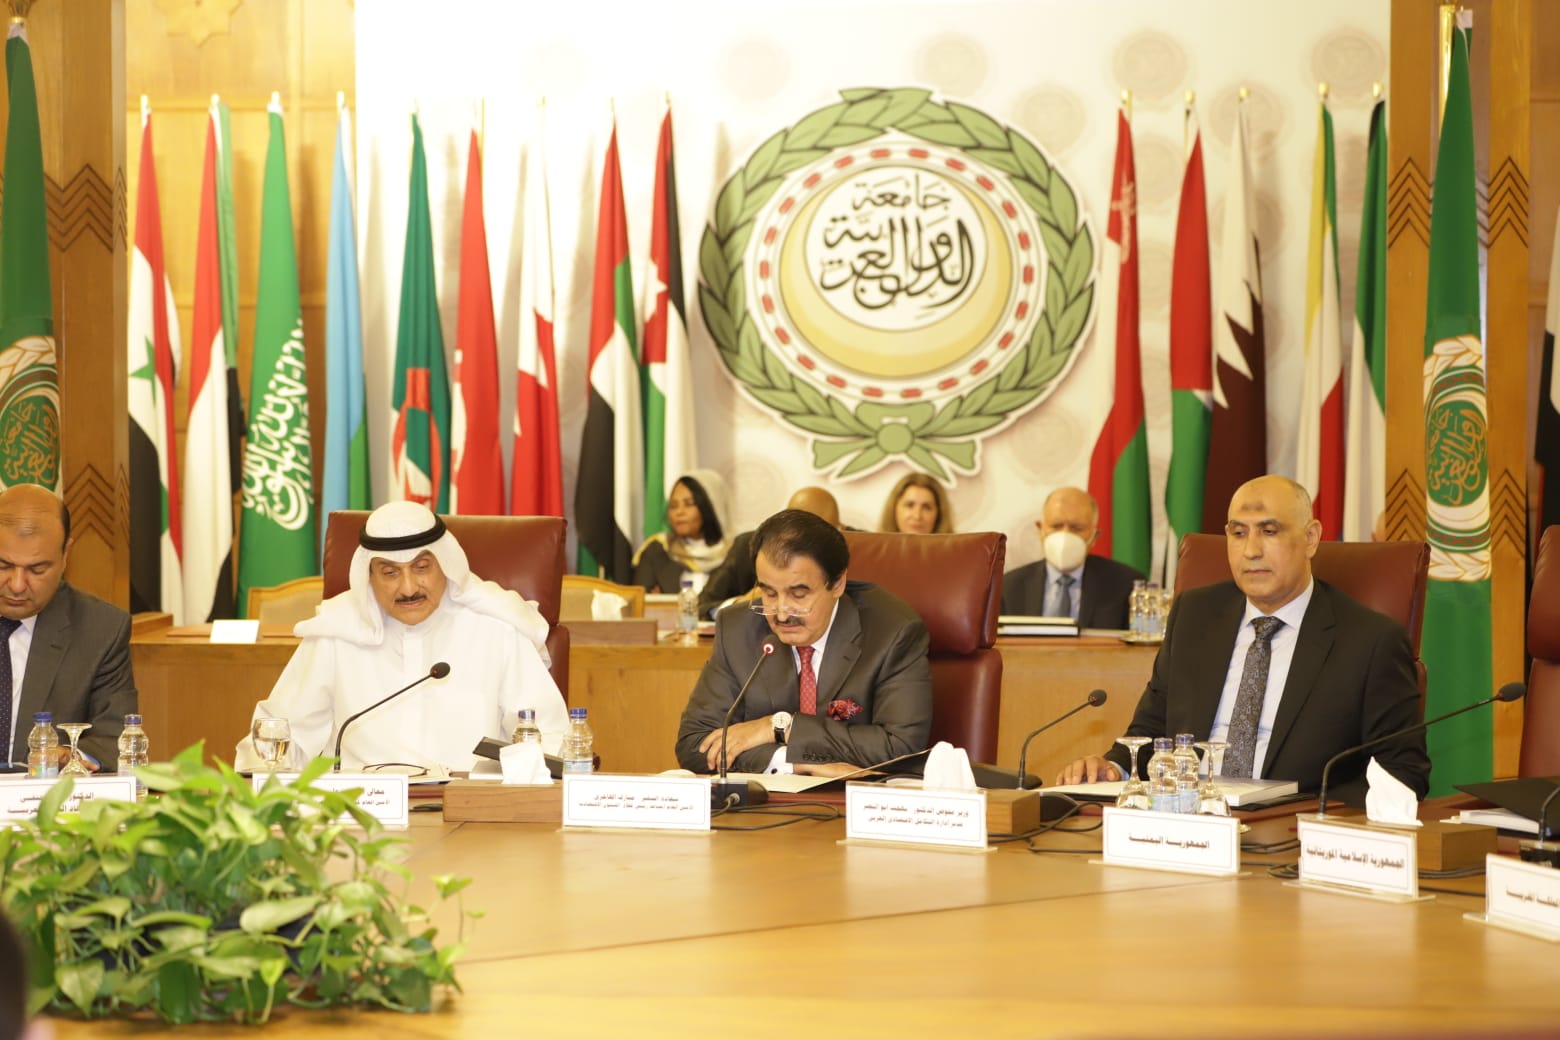 الجامعة العربية تحتفل باطلاق التقرير الاقتصادي العربي الموحد للعام 2021